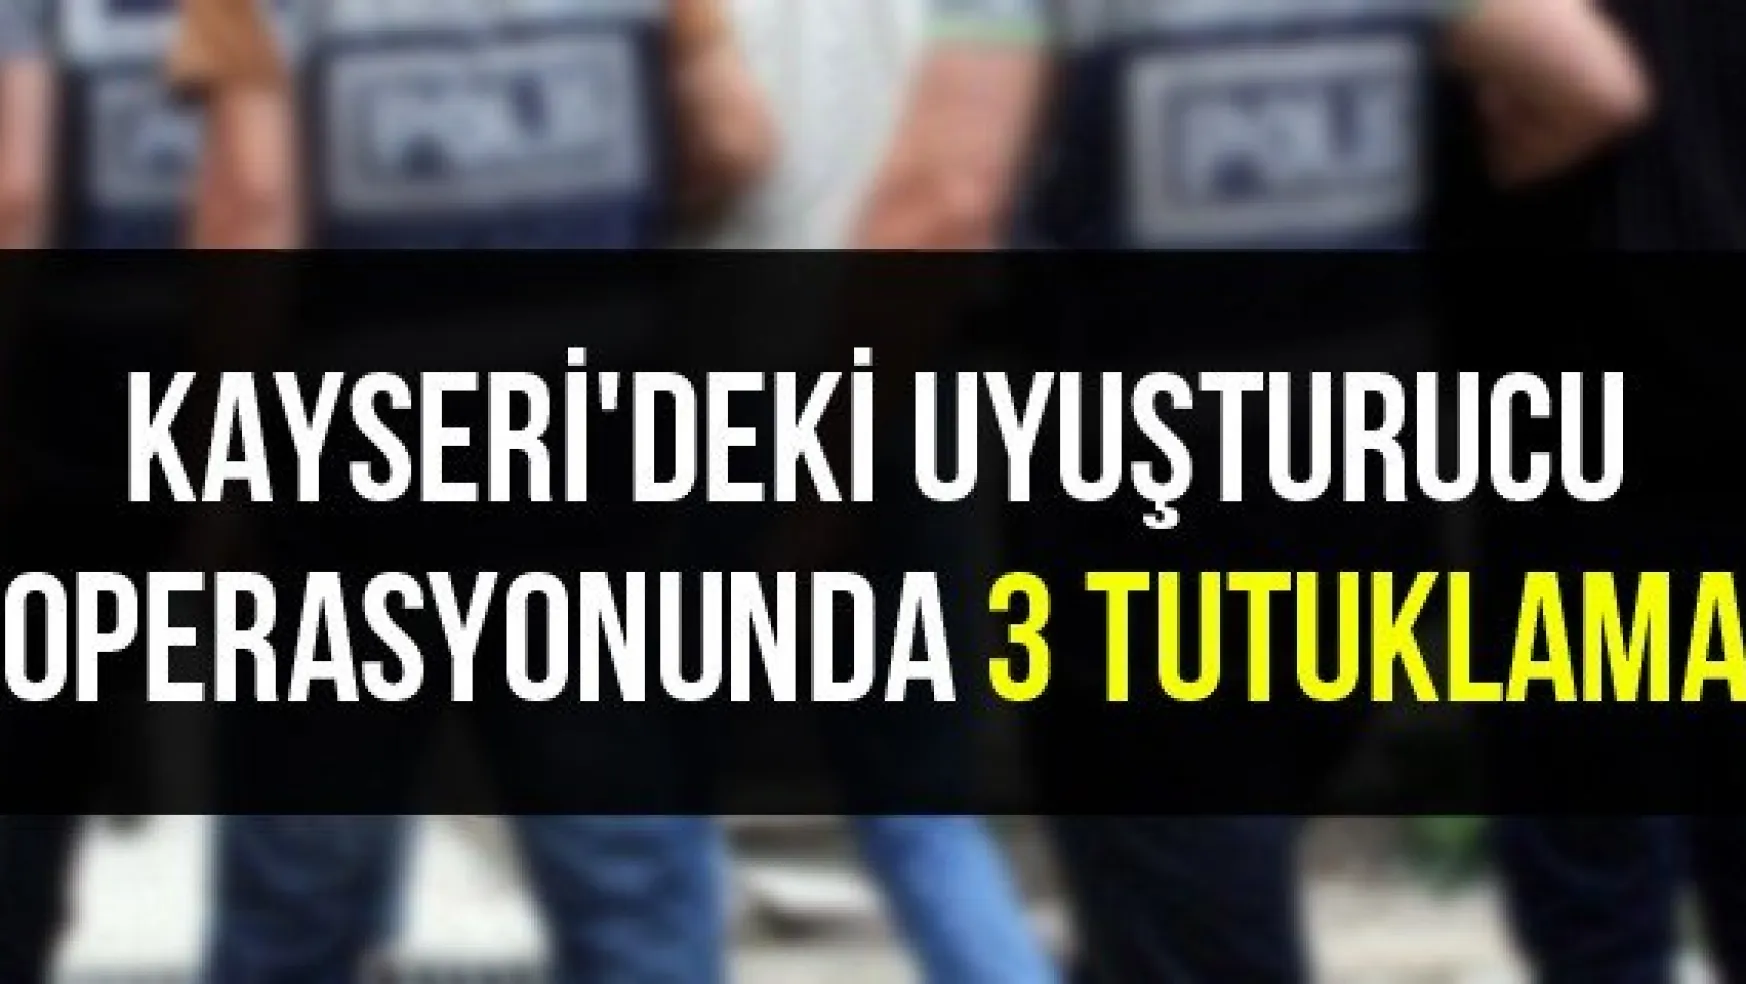 Kayseri'deki uyuşturucu operasyonunda 3 tutuklama